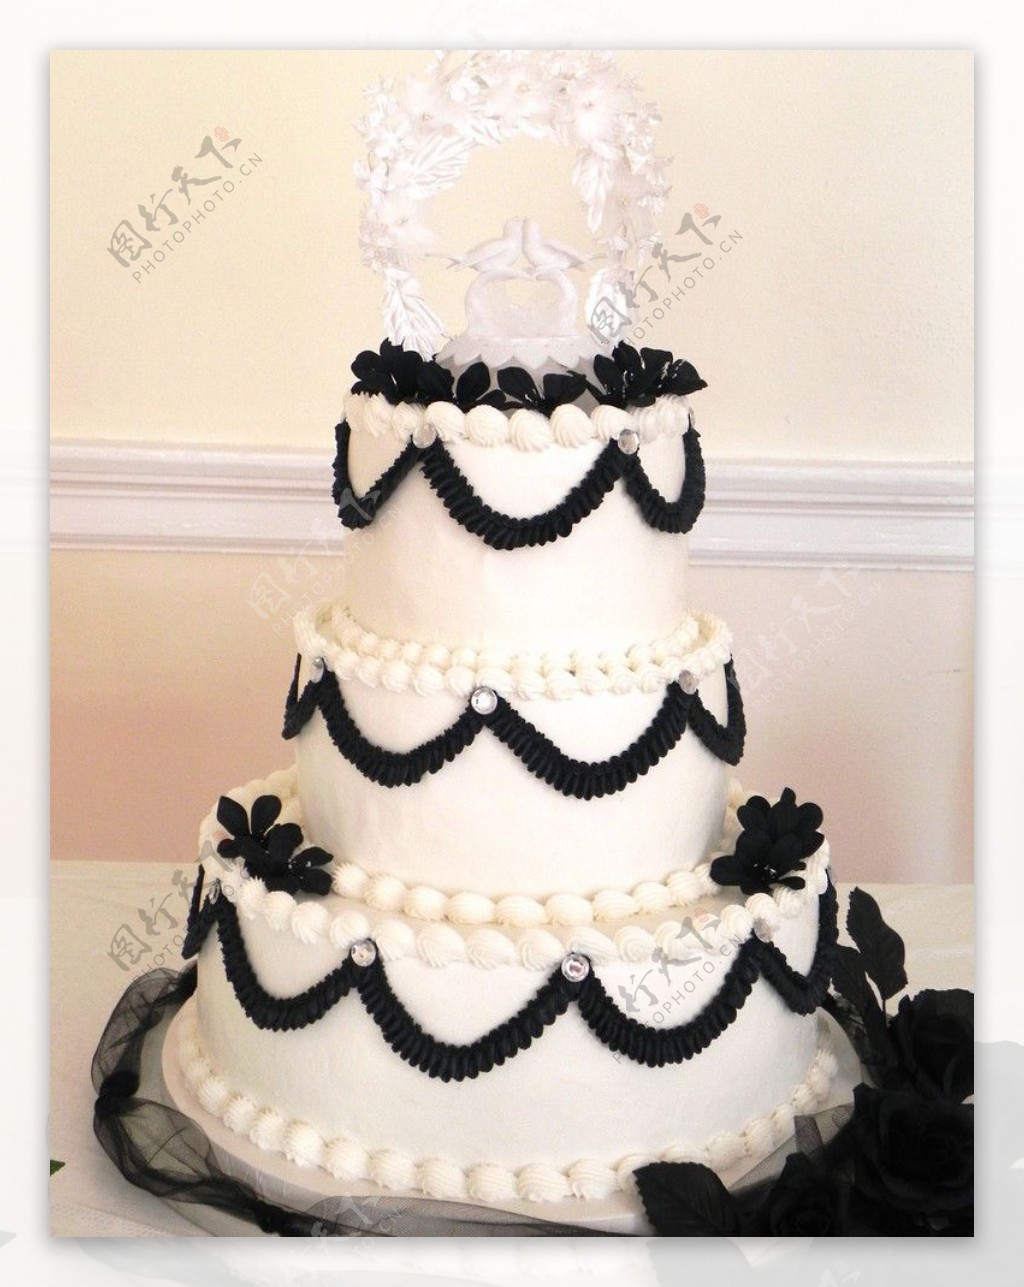 黑白配婚礼蛋糕图片